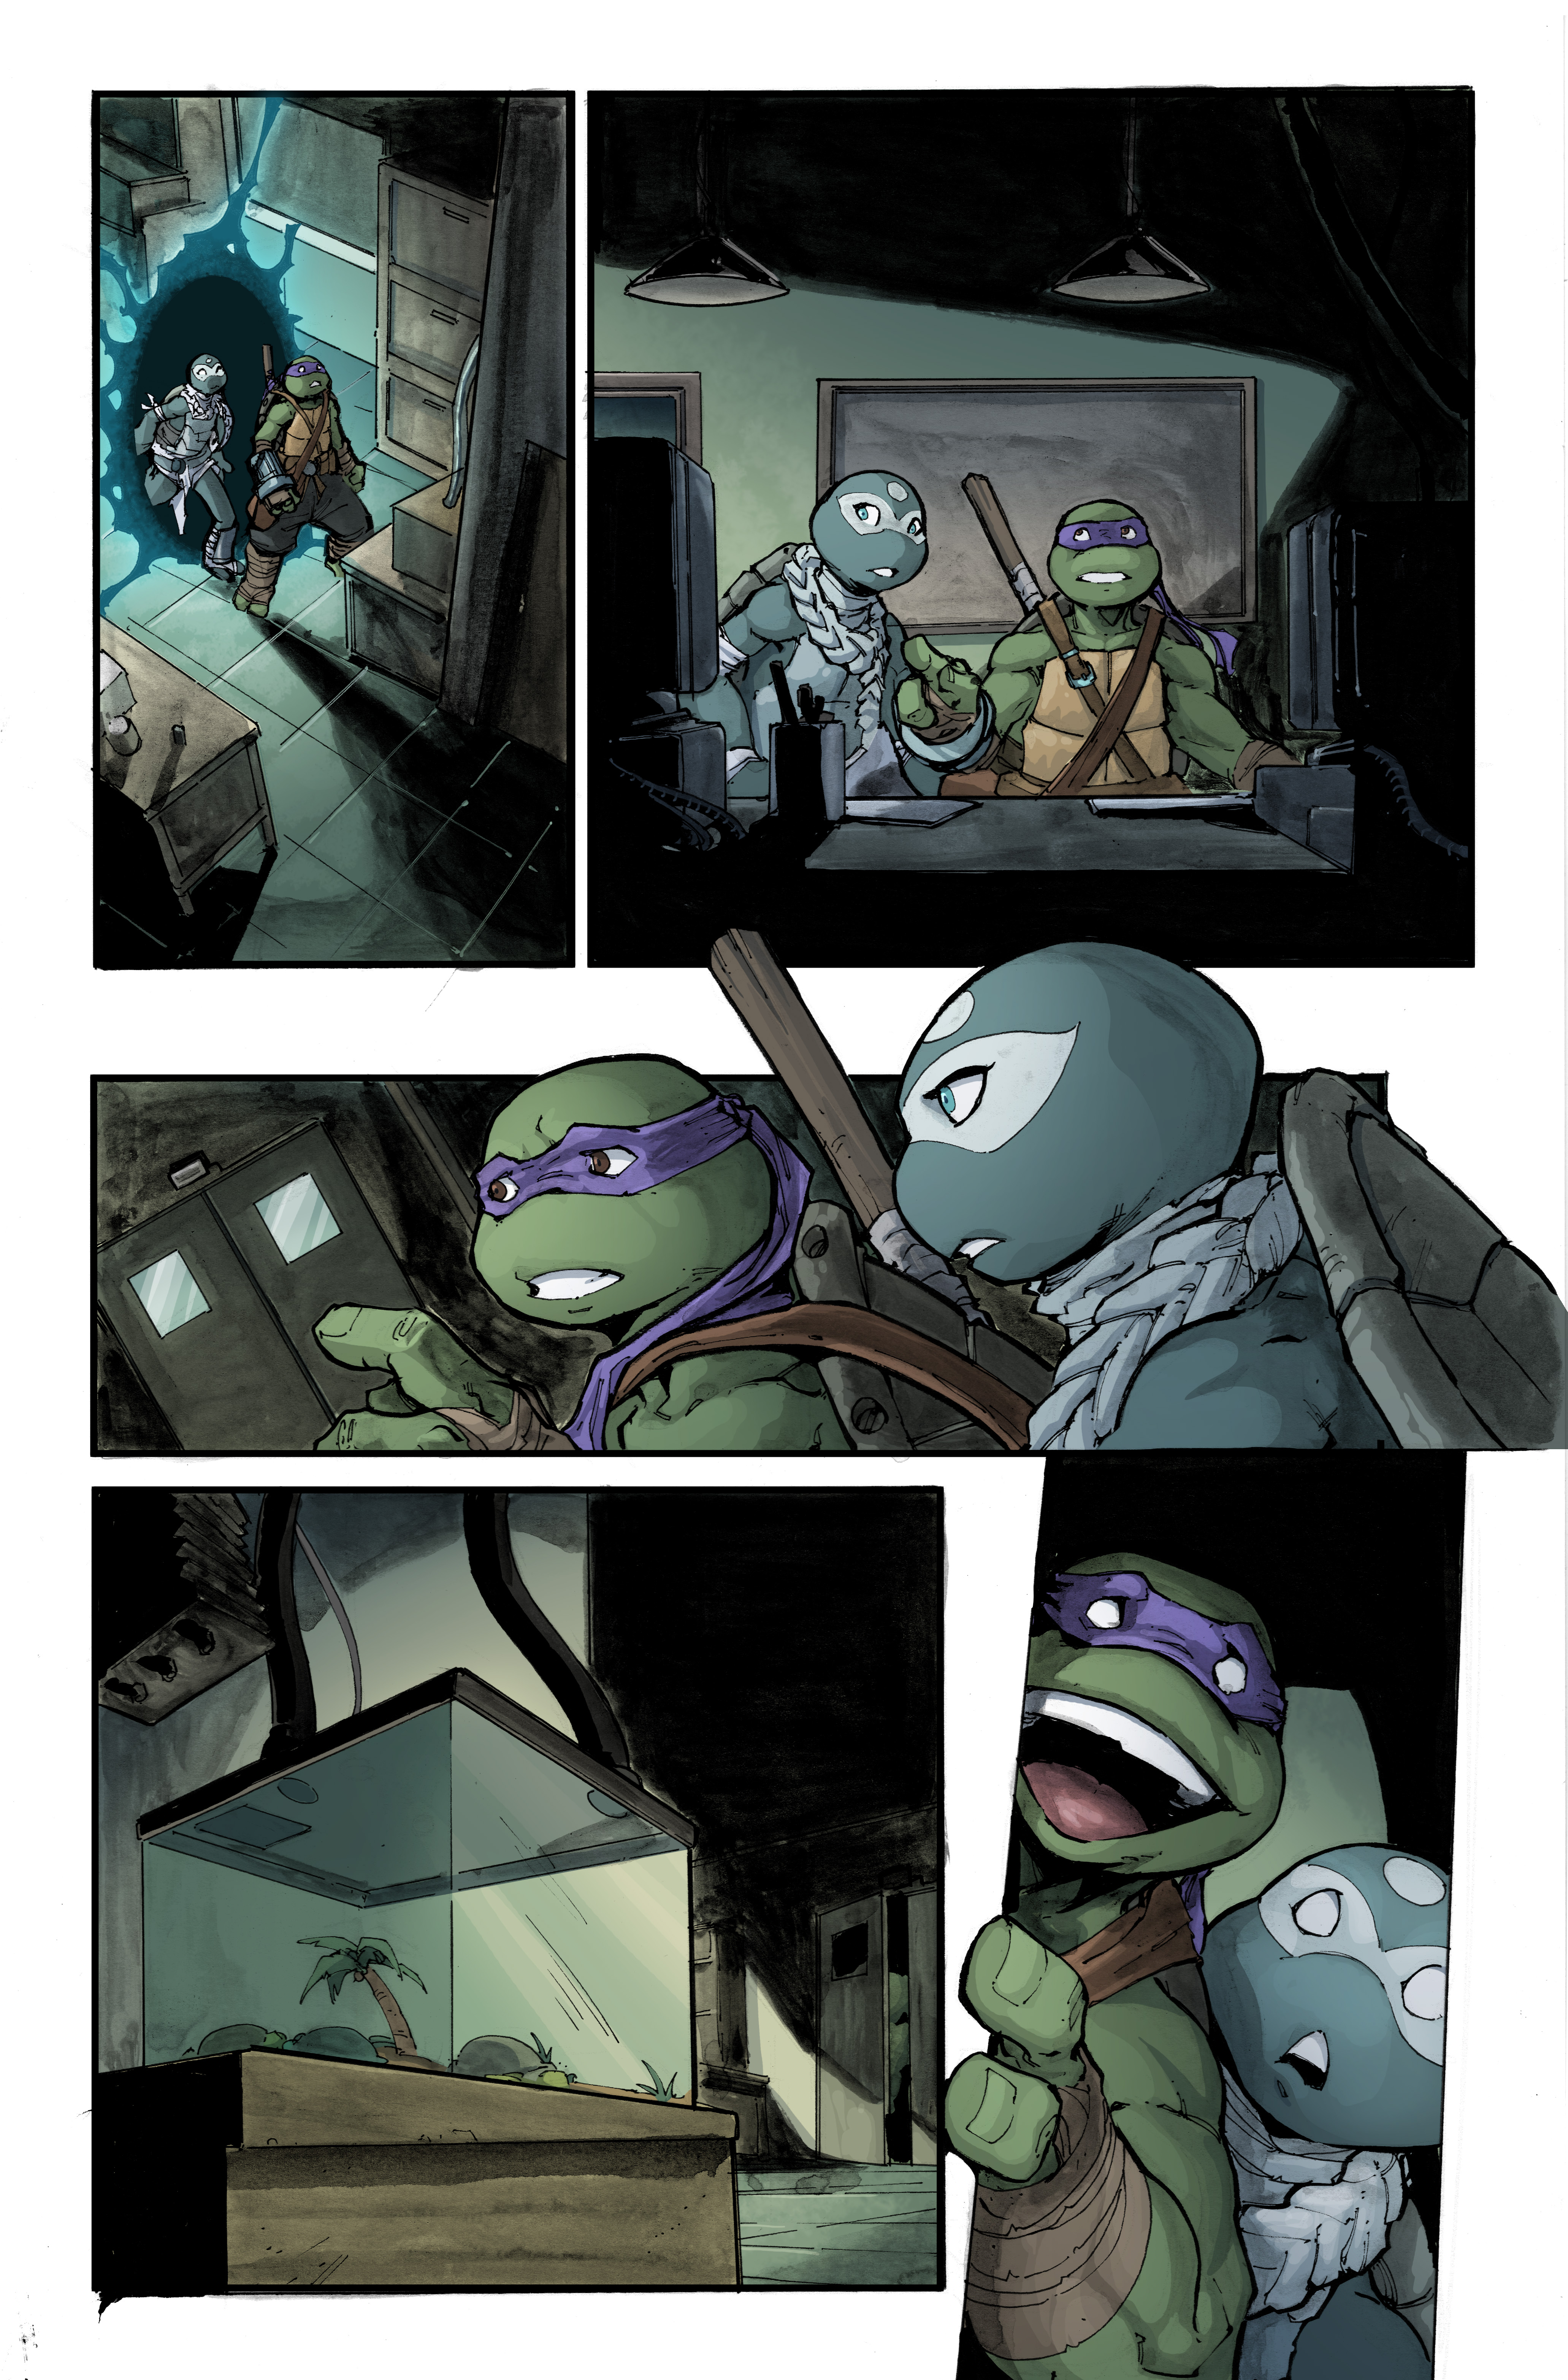 Covers from Teenage Mutant Ninja Turtles #150